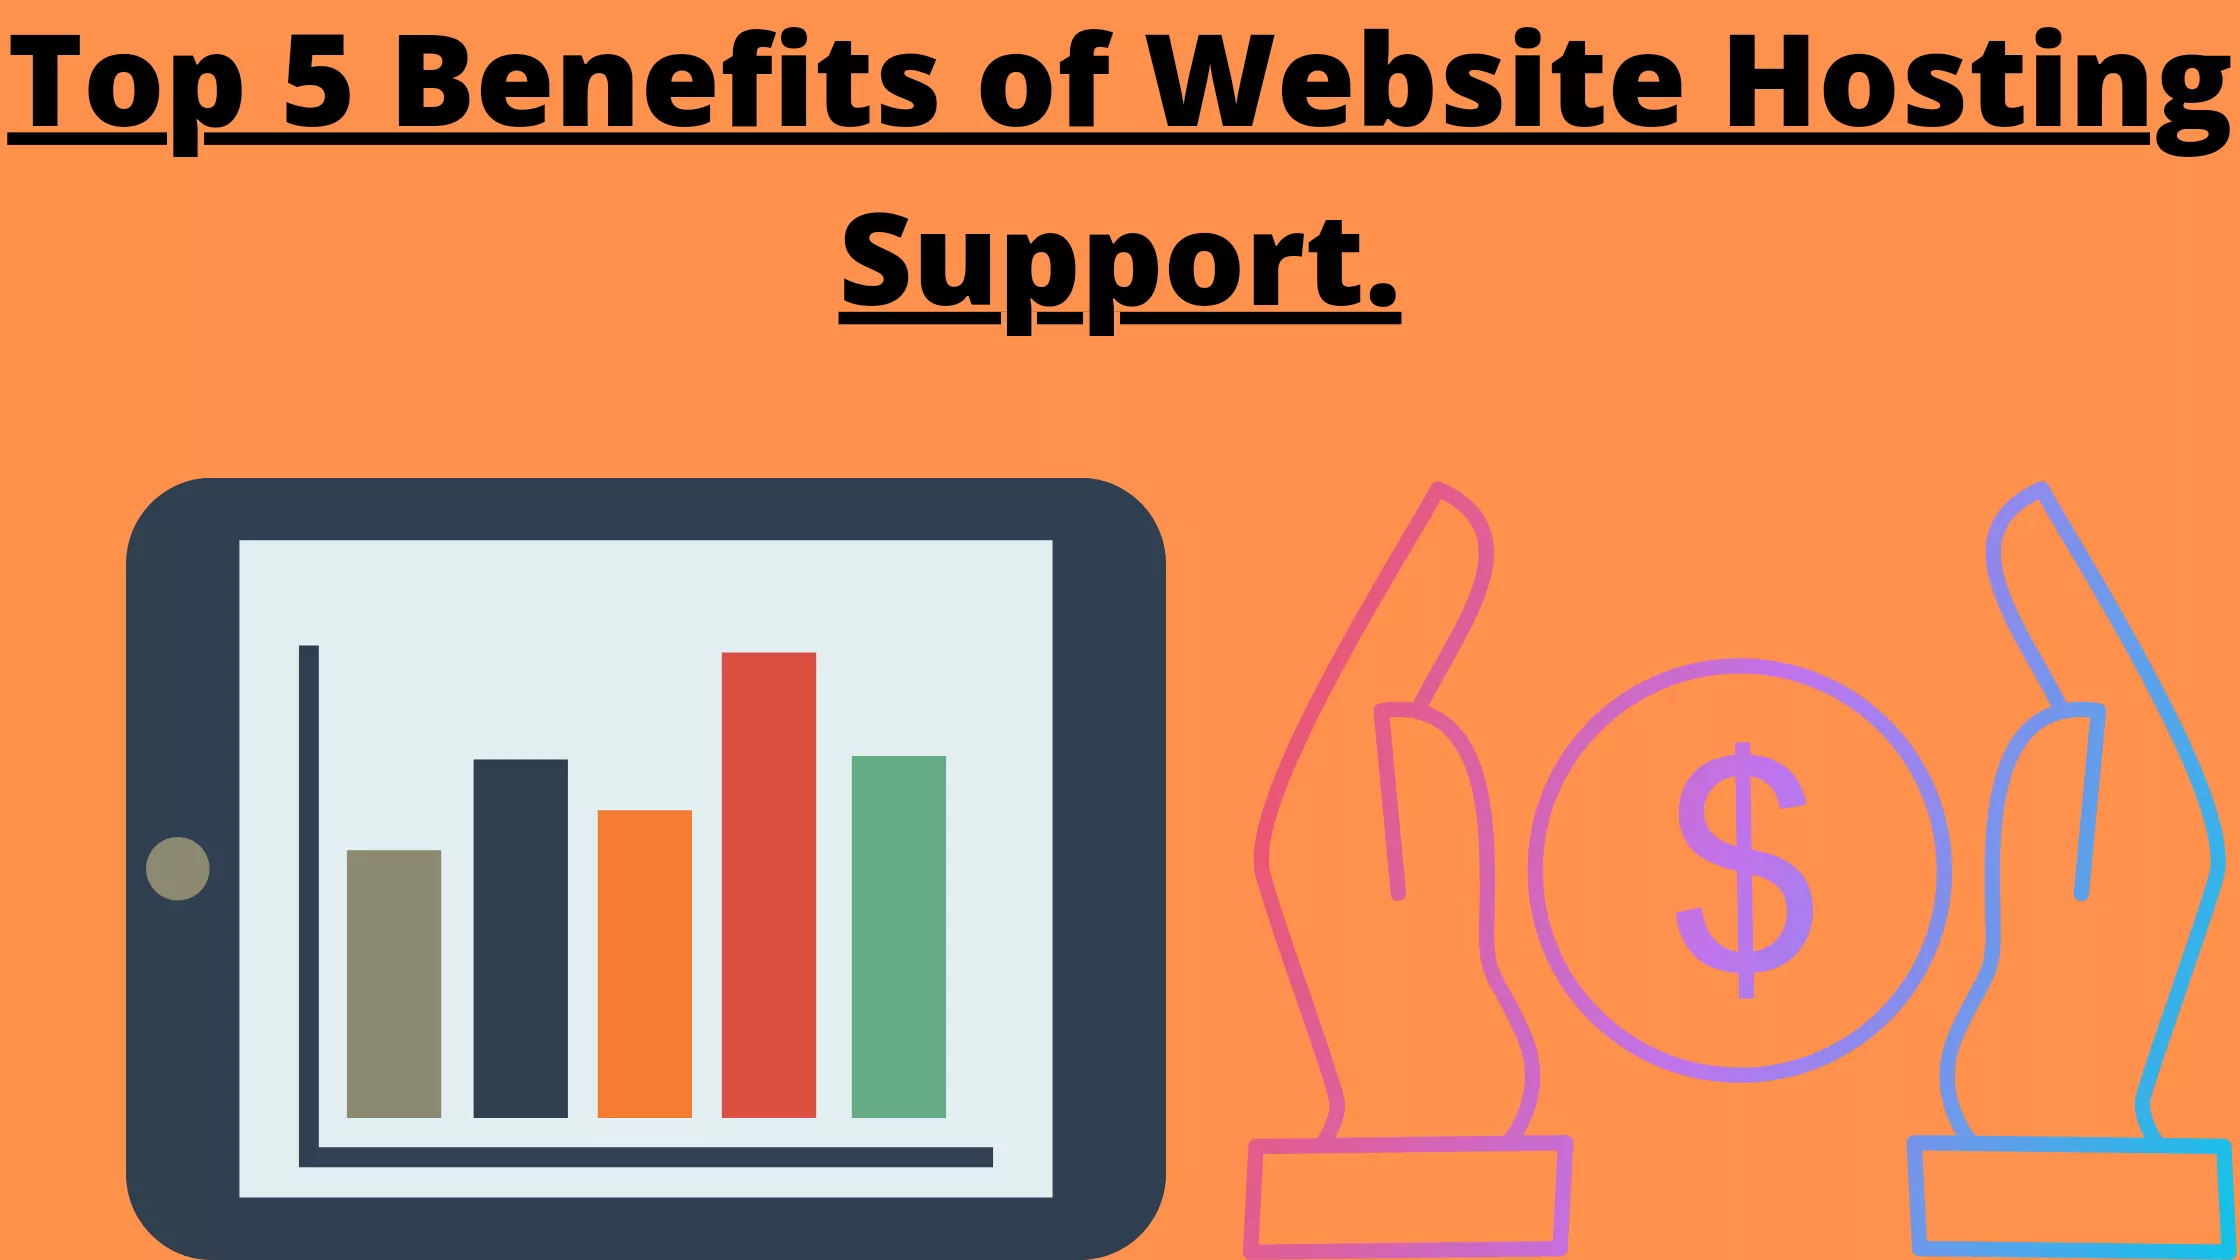 Website Hosting Support